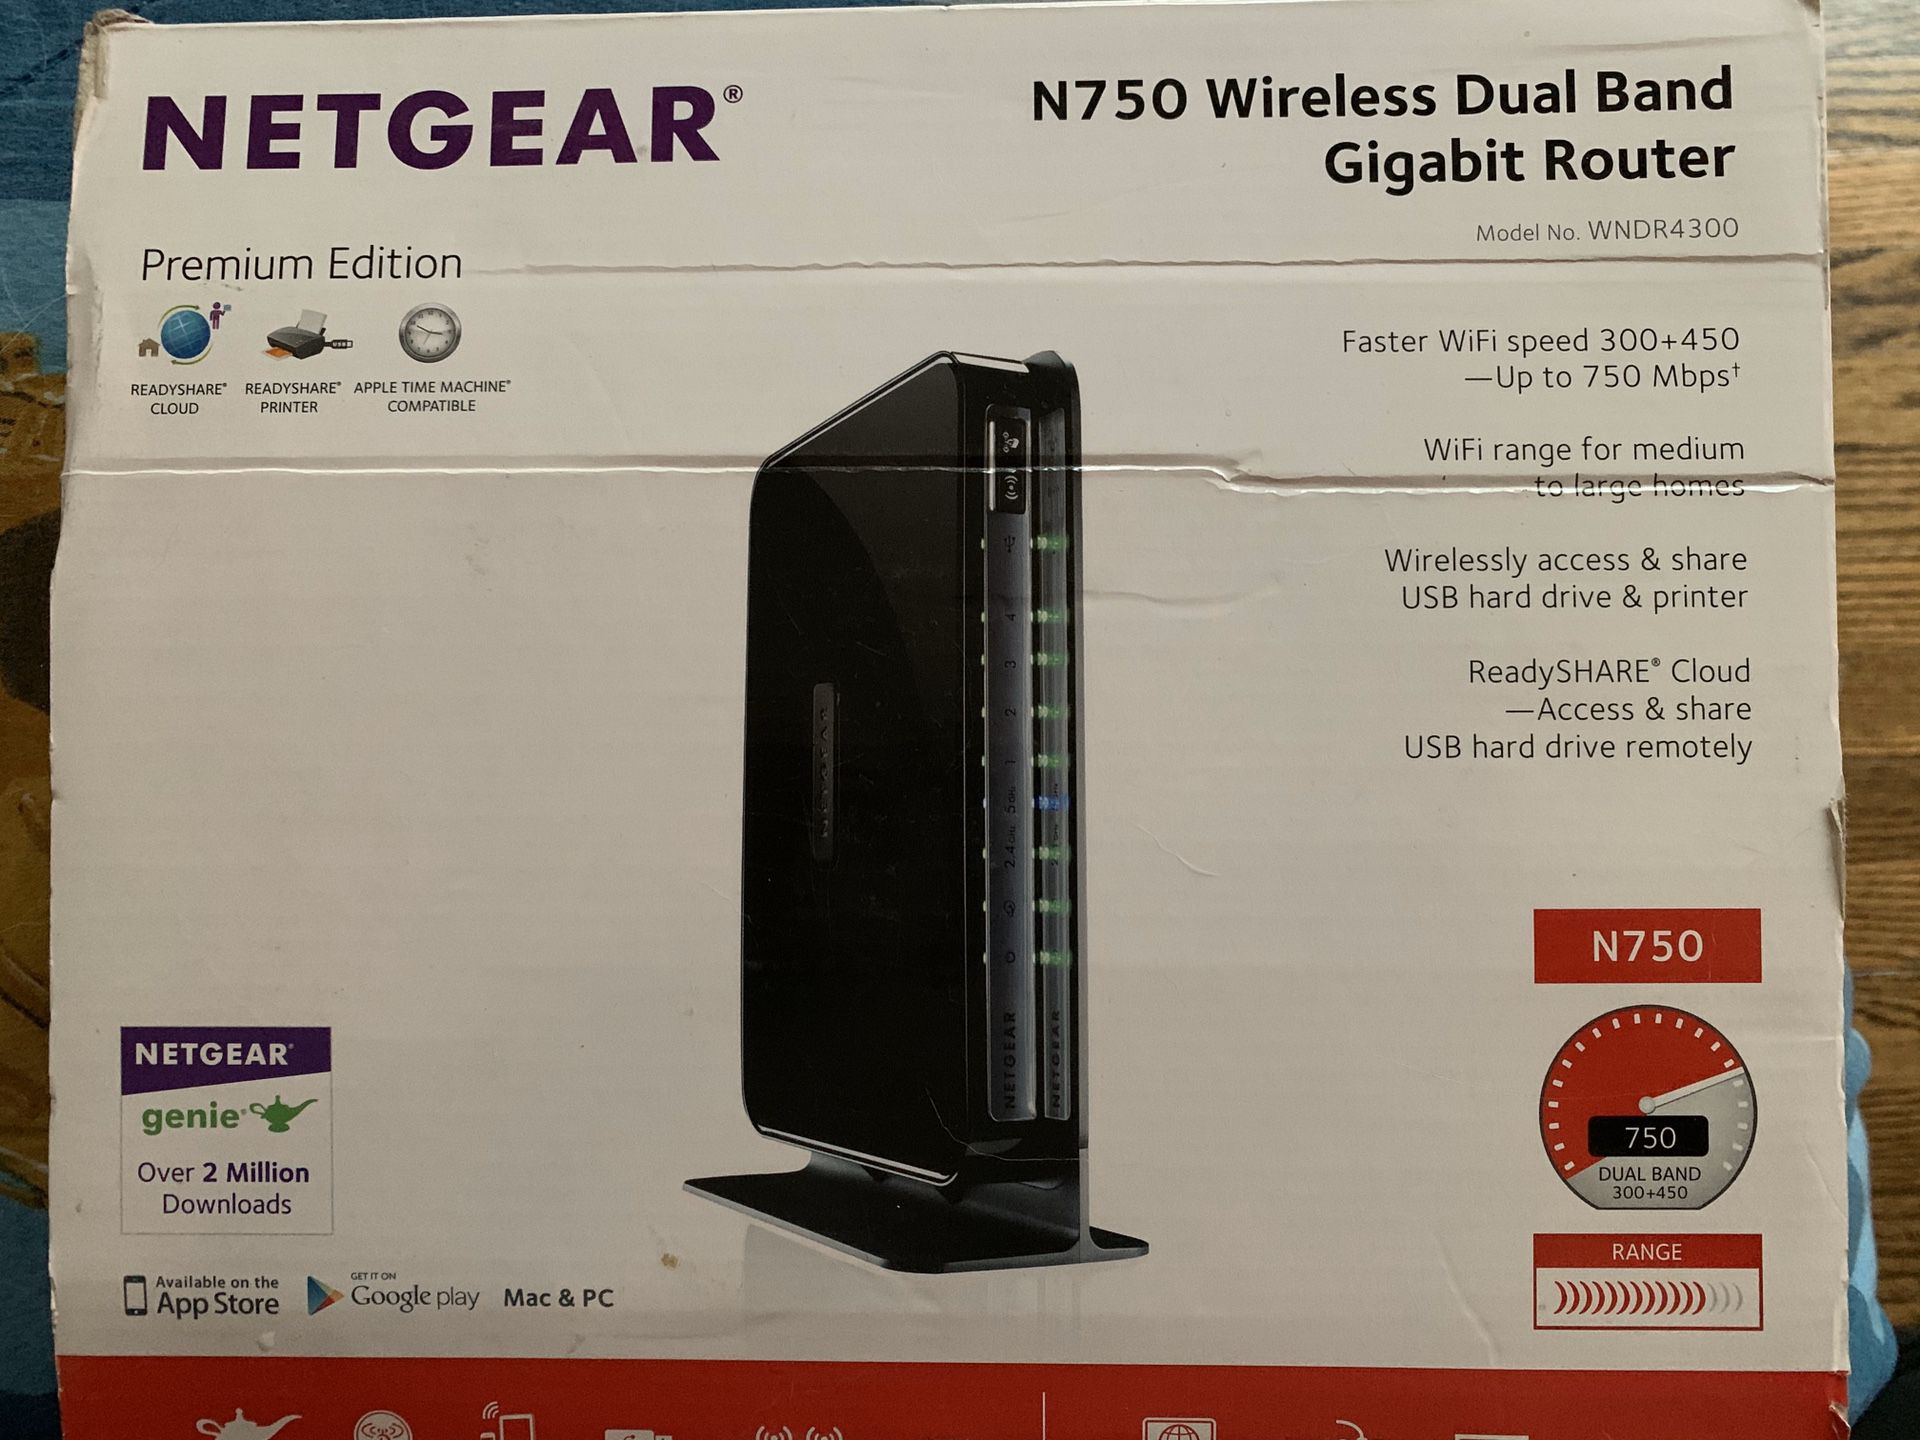 Netgear N750 Wireless Dual Band Gigabit Router